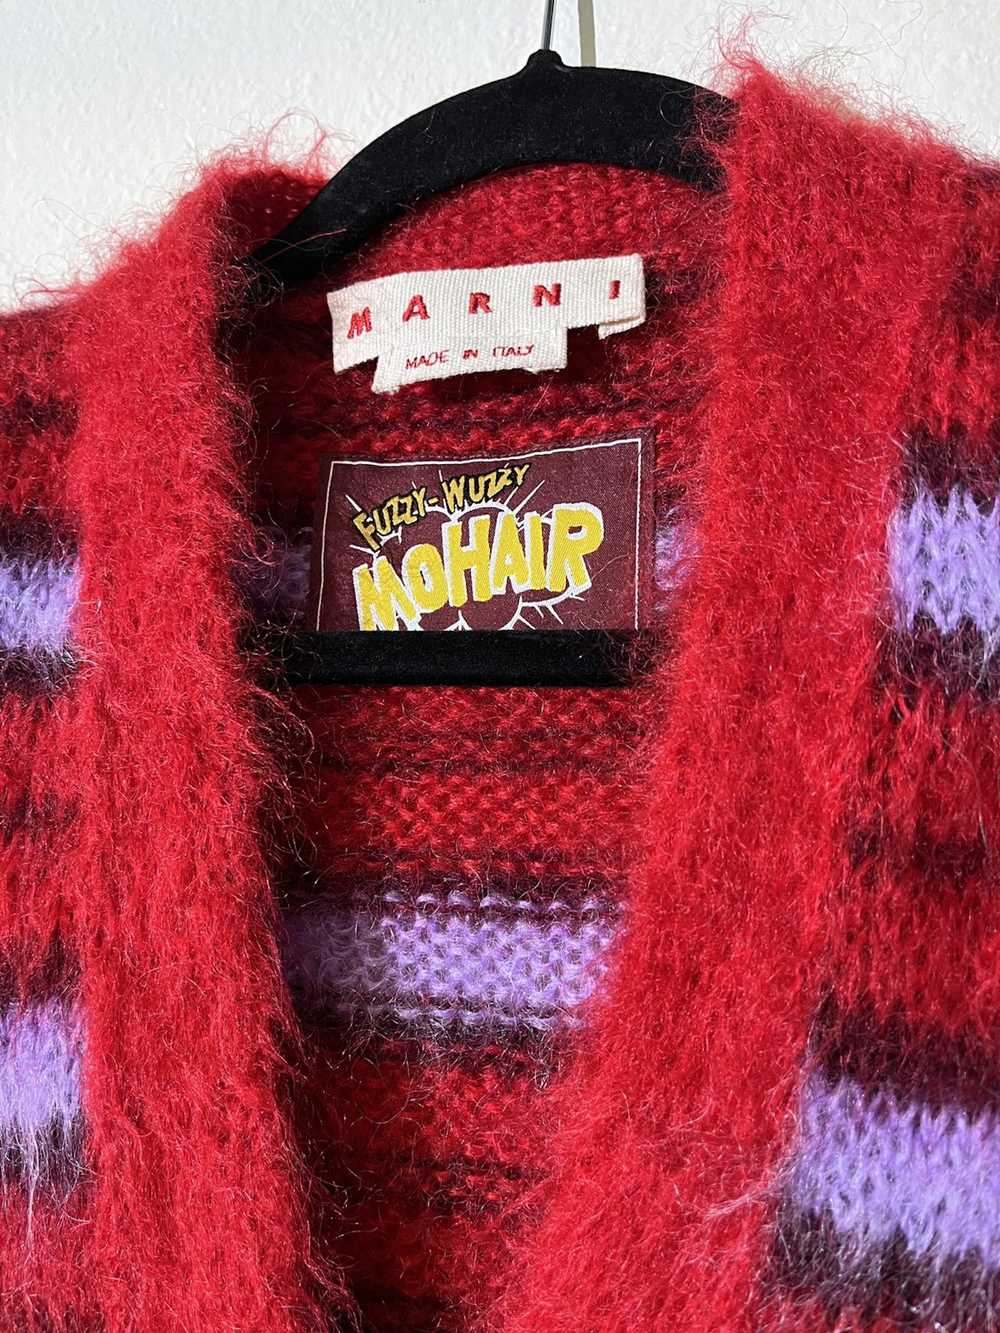 Marni Marni fuzzy wuzzy mohair striped cardigan - image 2